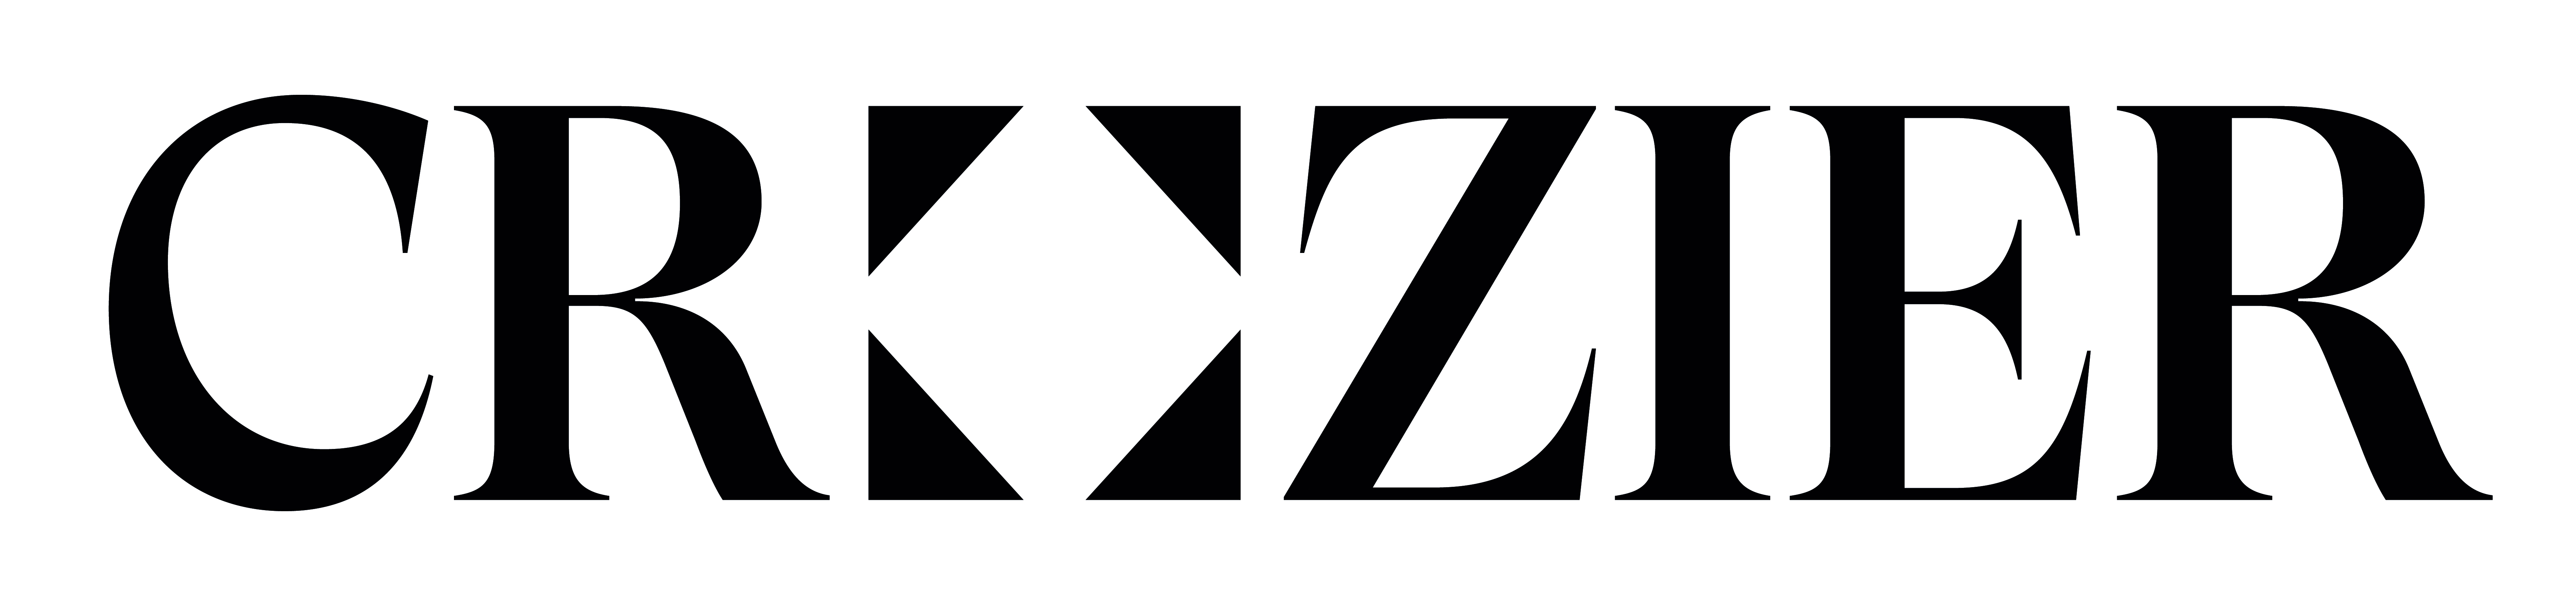 Crozier logo in black